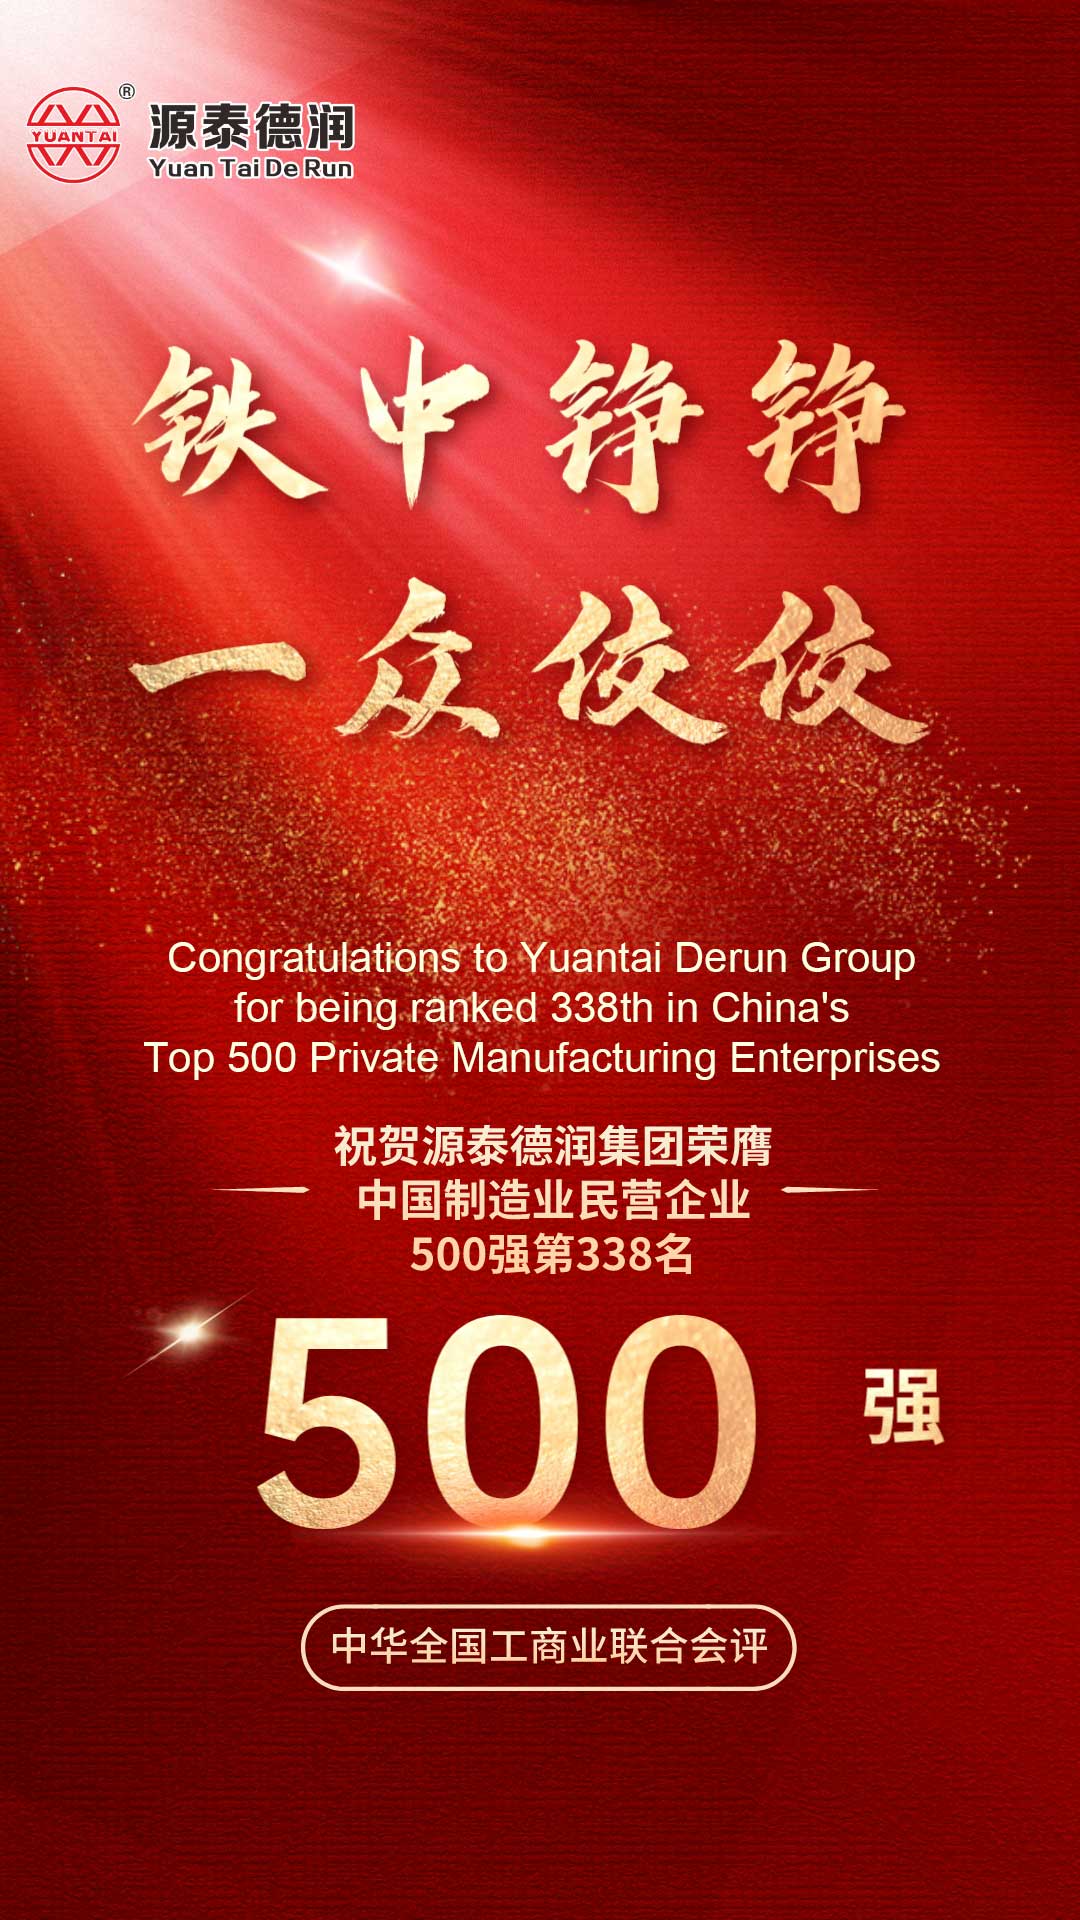 축하합니다!Tianjin Yuantai Derun Group은 '2023년 중국 제조업 500대 민간 기업 목록'에 선정되어 338위를 차지했습니다.